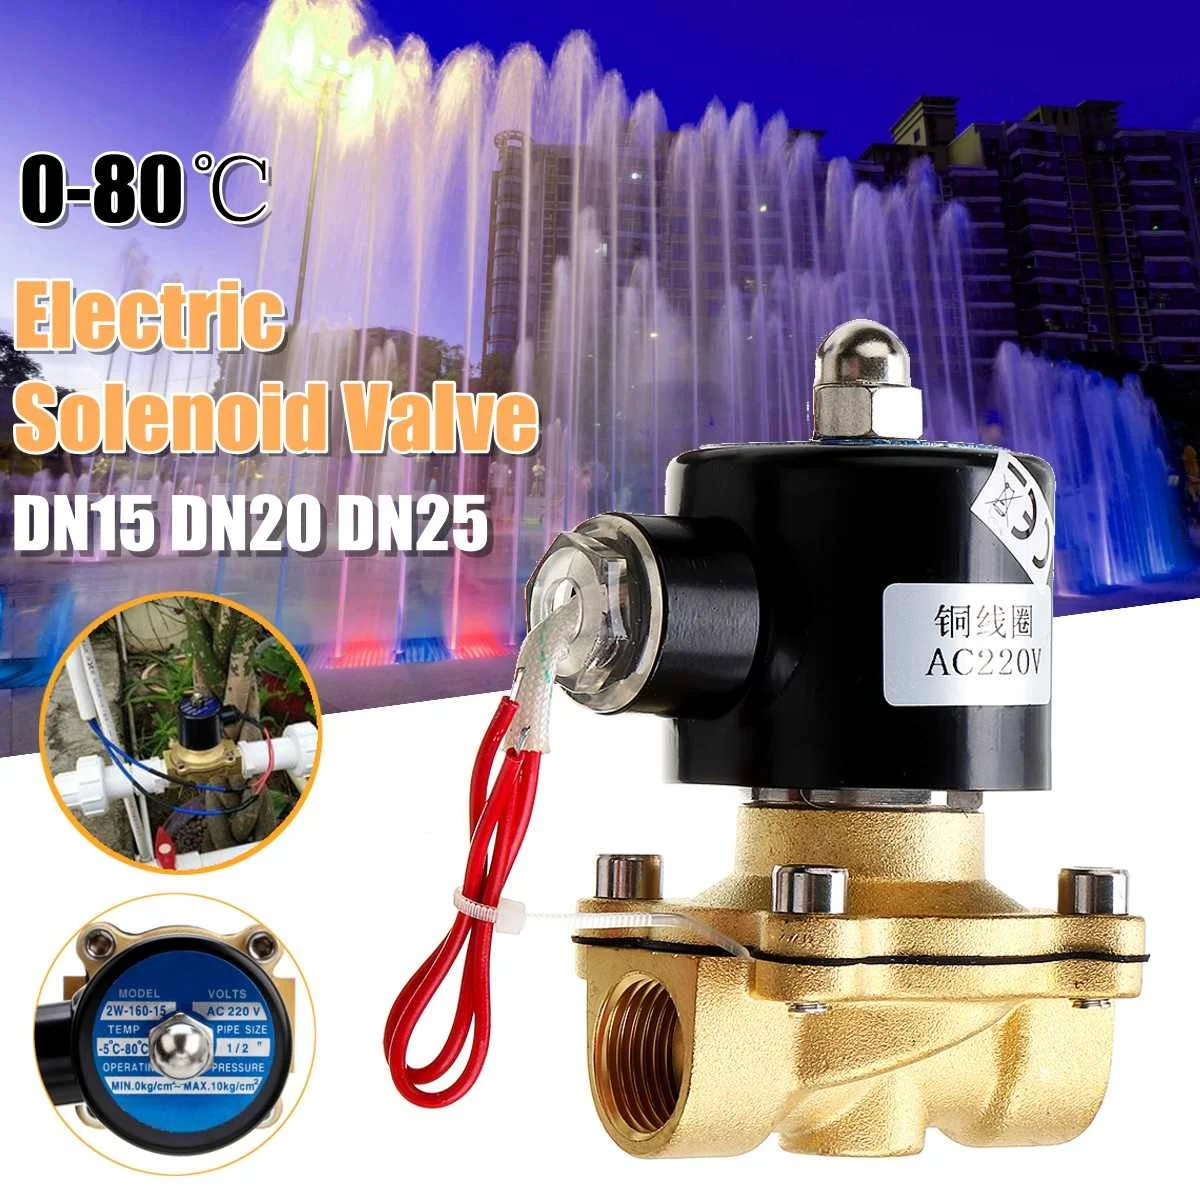 

1/2 3/4 1 дюйм 220 В Электрический Соленоидный клапан пневматический клапан для воды, воздуха, газа, латунный клапан воздушные клапаны DN15 DN20 DN25